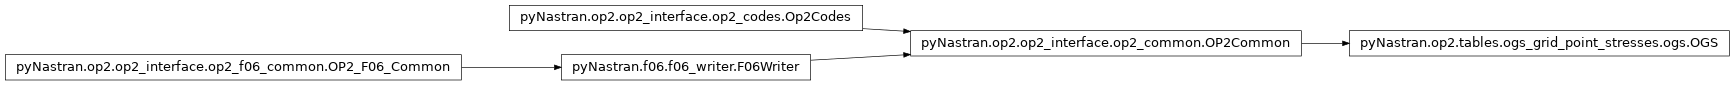 Inheritance diagram of pyNastran.op2.tables.ogs_grid_point_stresses.ogs